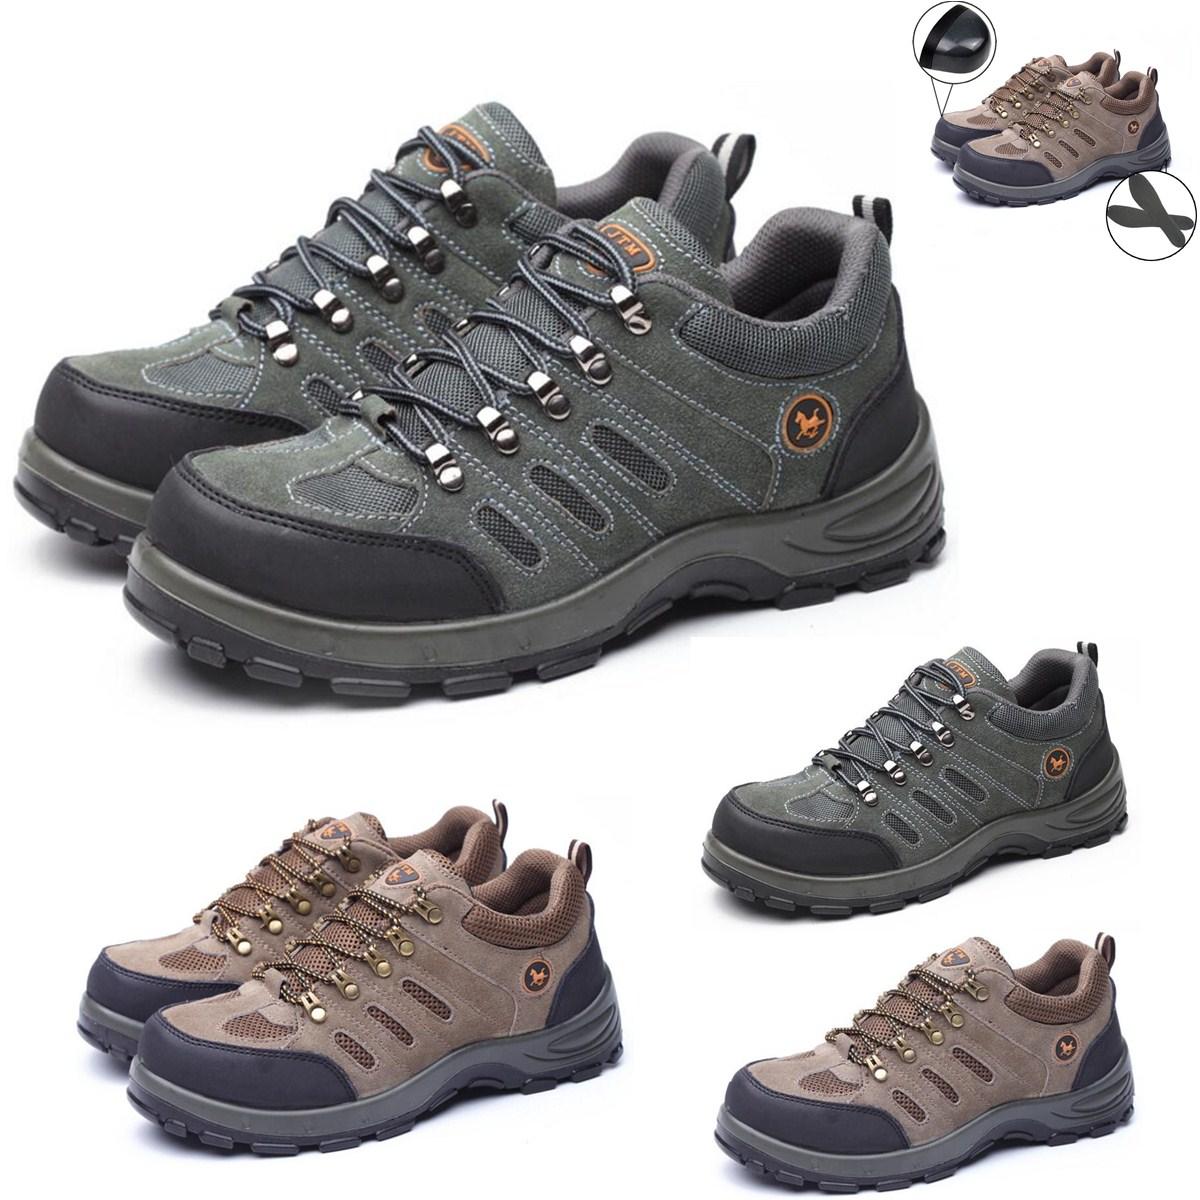 נעלי בטיחות לגברים TENGOO, עם קצה מתכת, נושמות, לטיפוס, הליכה ועבודה בחוץ.